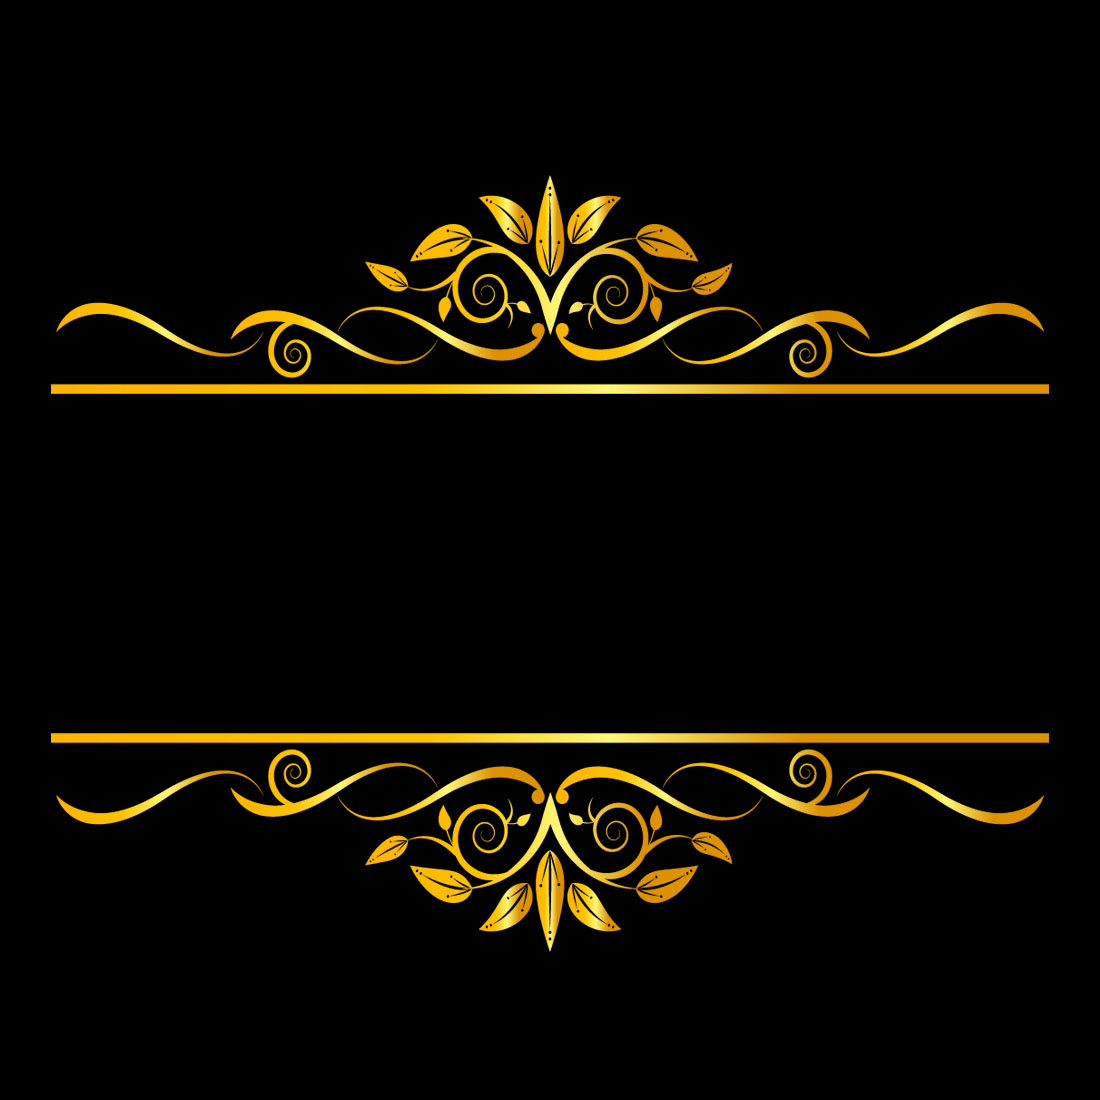 Elegance Golden Floral Ornament Frame Design Vector on Black Color main cover.